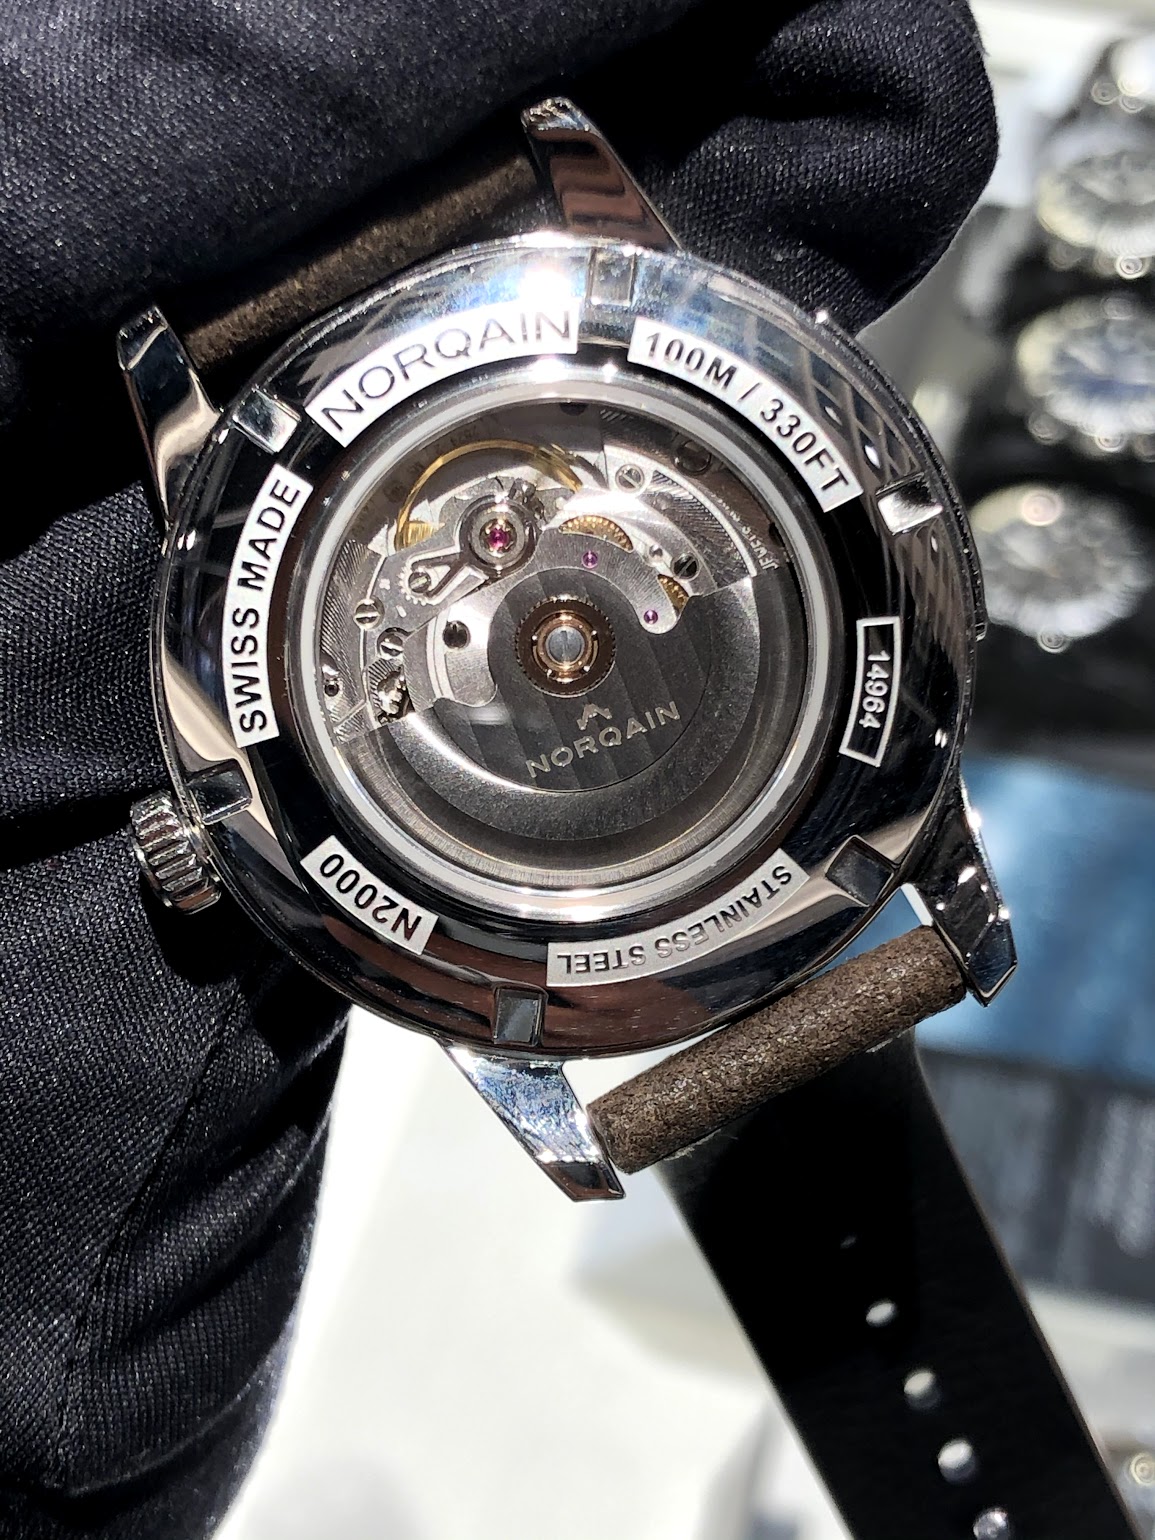 スイス時計の良さをあなたの元へ！－ノルケイン－ | ブランド腕時計の正規販売店 A.M.I